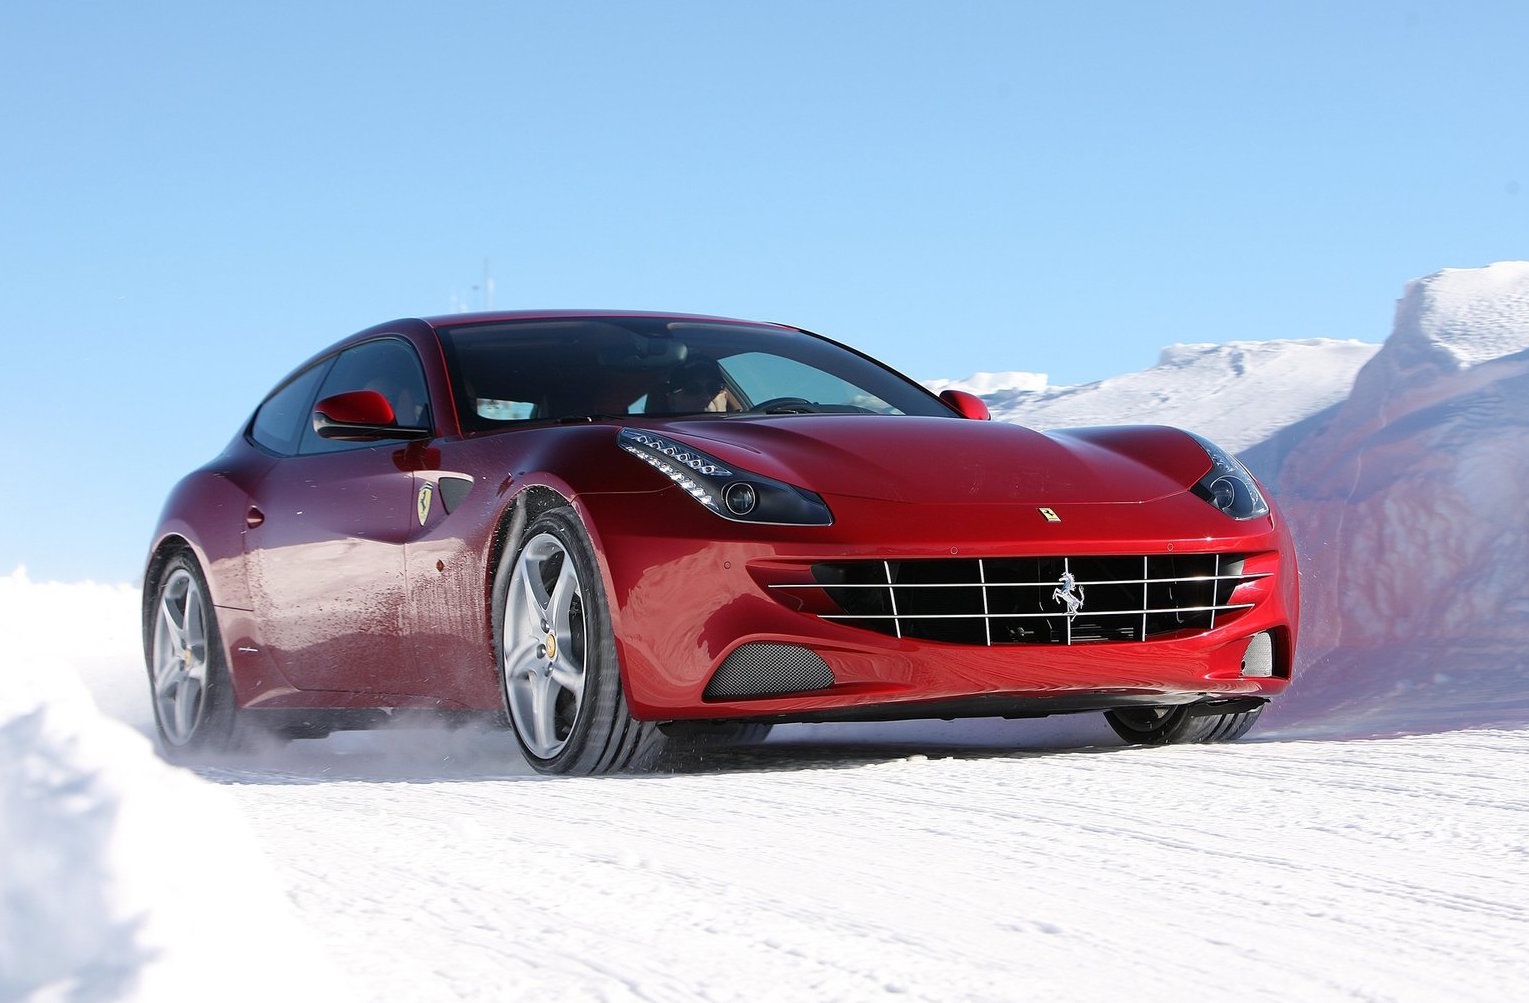 Ferrari SUV confirmed by FCA boss Sergio Marchionne – report